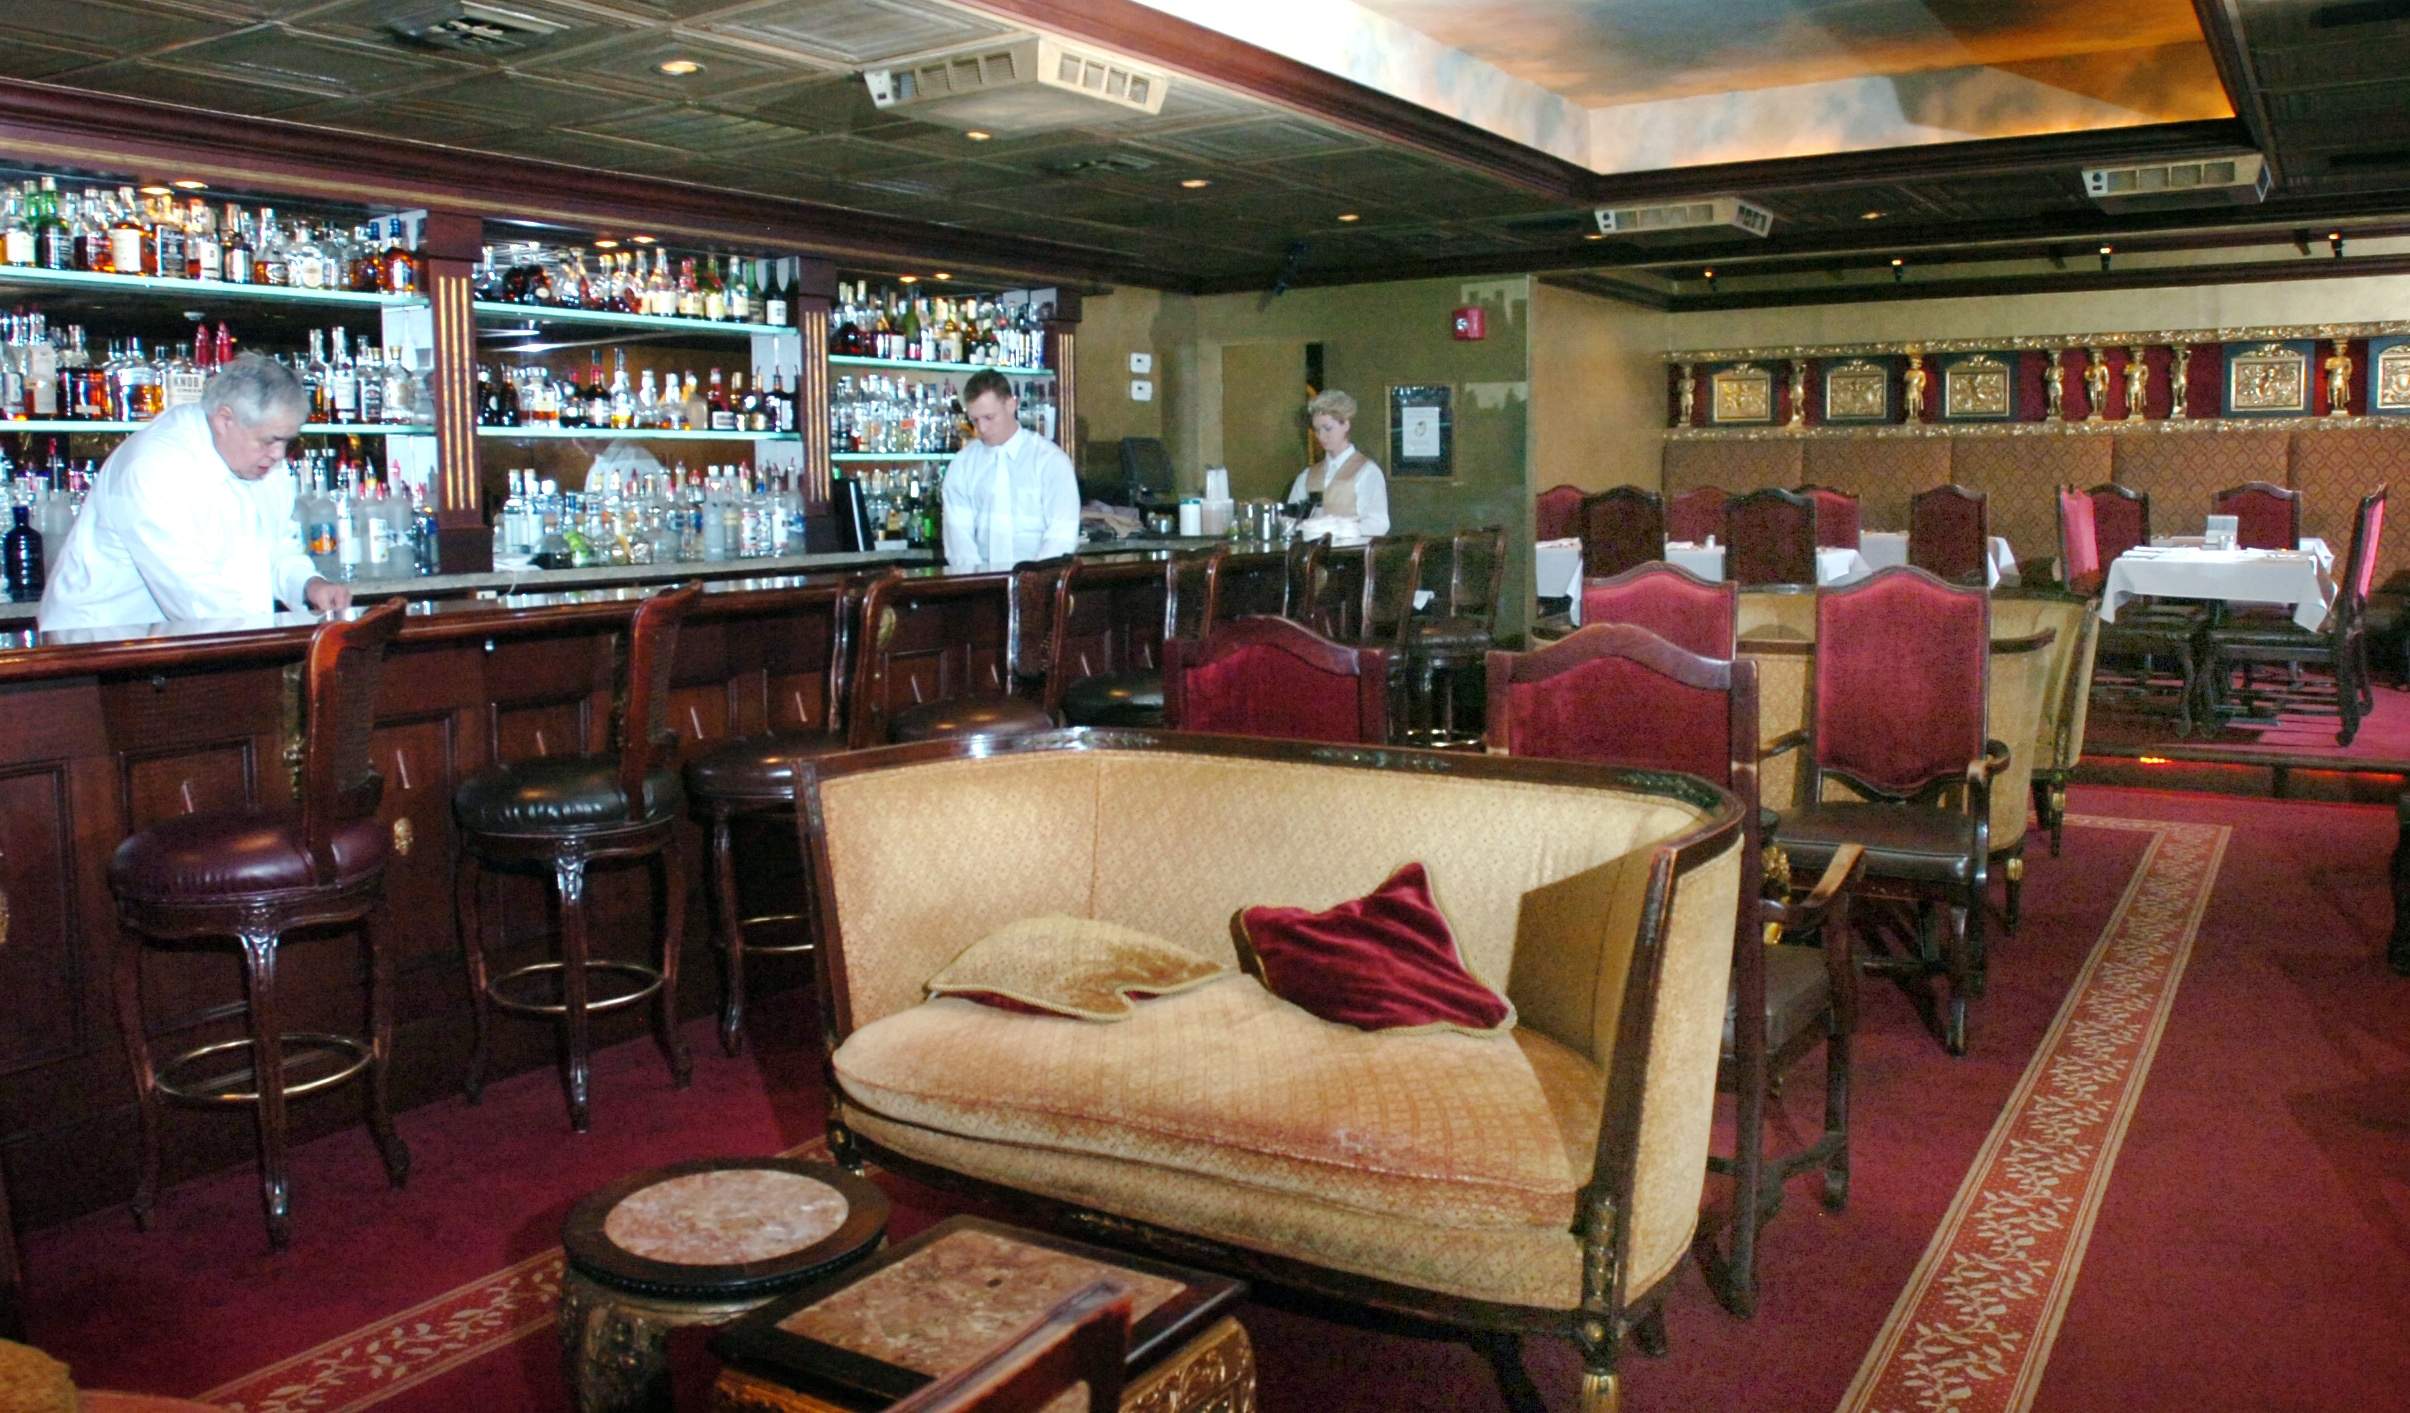 Bar & lounge - image by Times Publishing Inc.